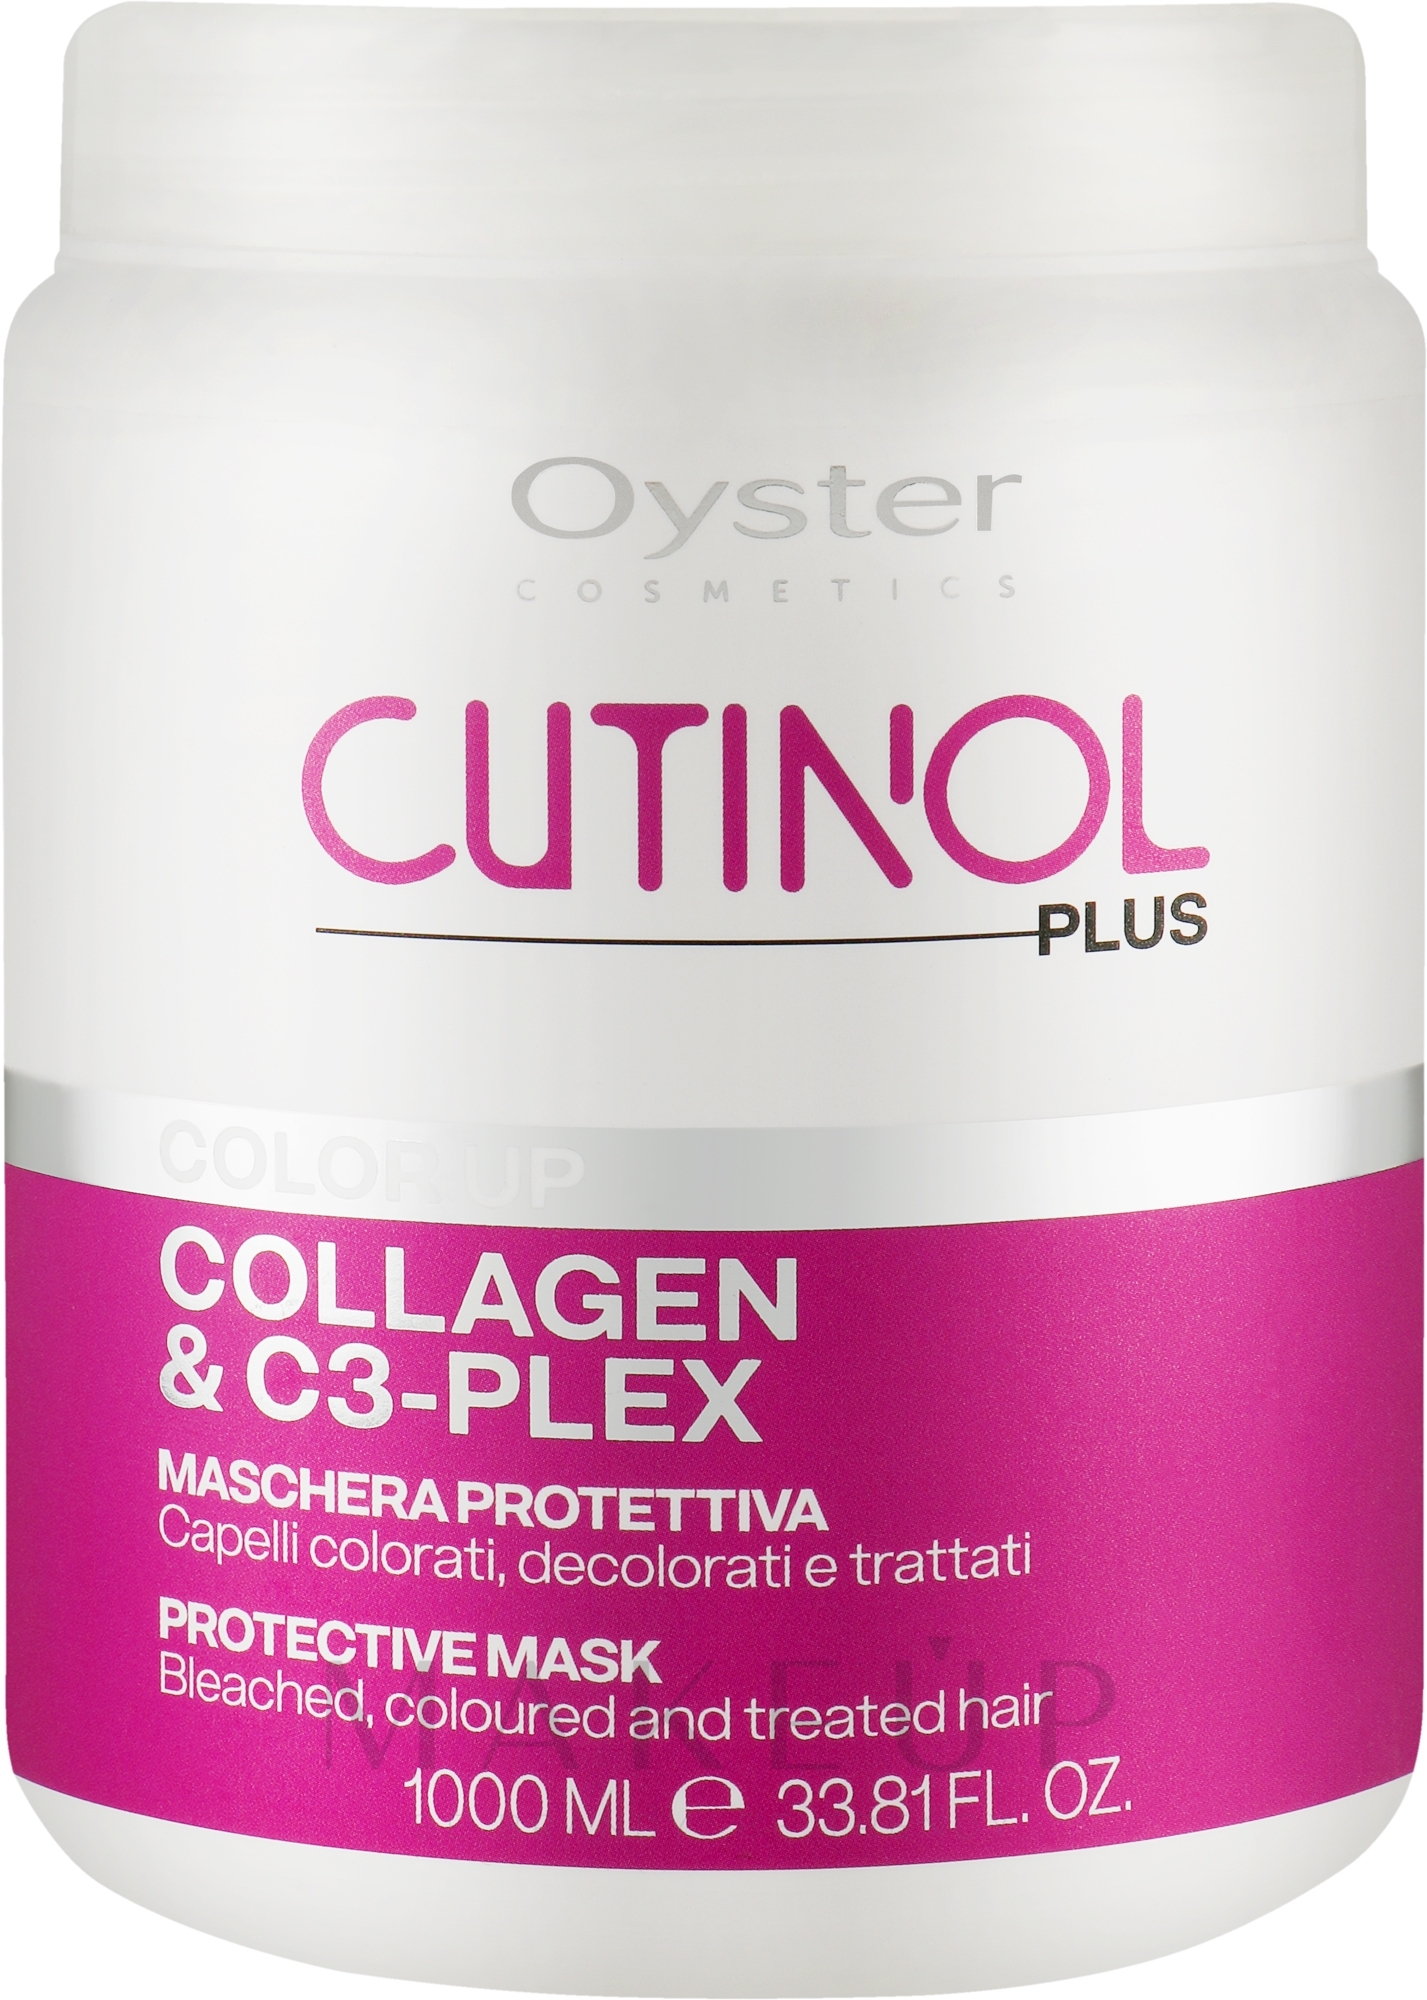 Maske für coloriertes Haar - Oyster Cutinol Plus Collagen & C3-Plex Color Up Protective Mask — Bild 1000 ml